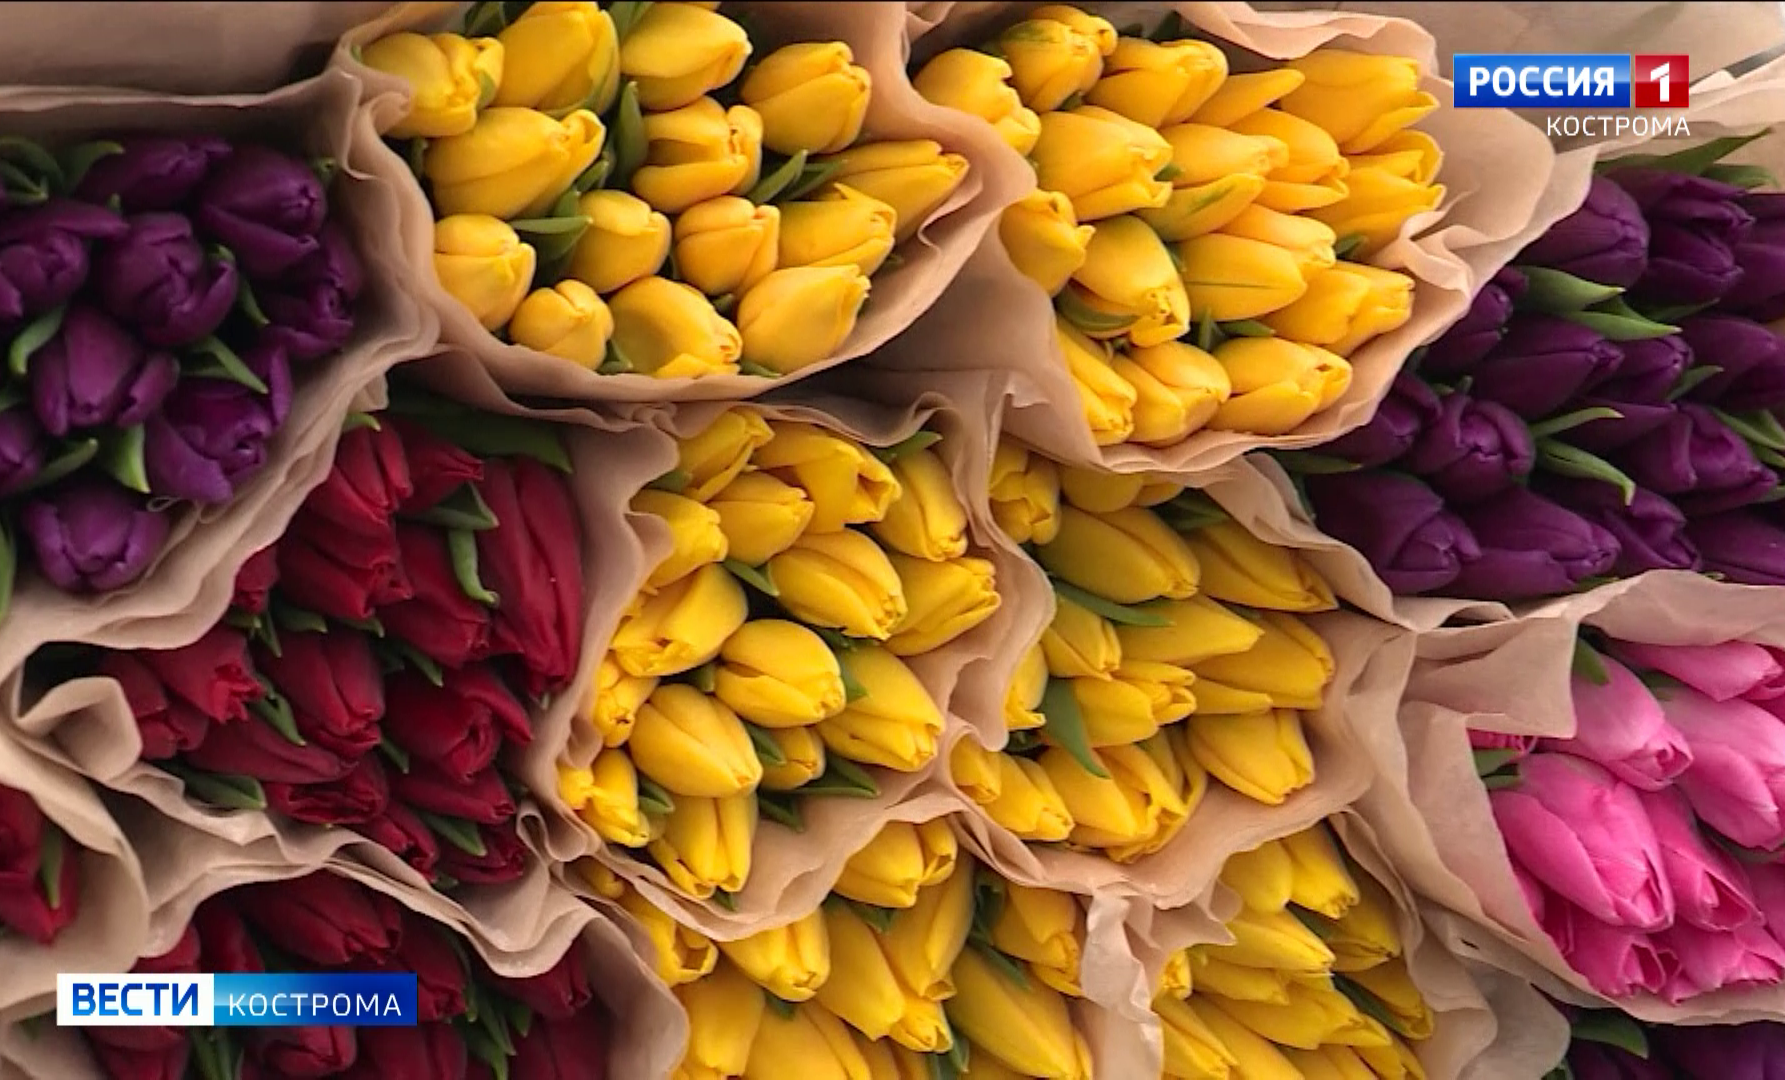 До 18 и дороже: мужчины в Костроме скупают цветы за любые деньги